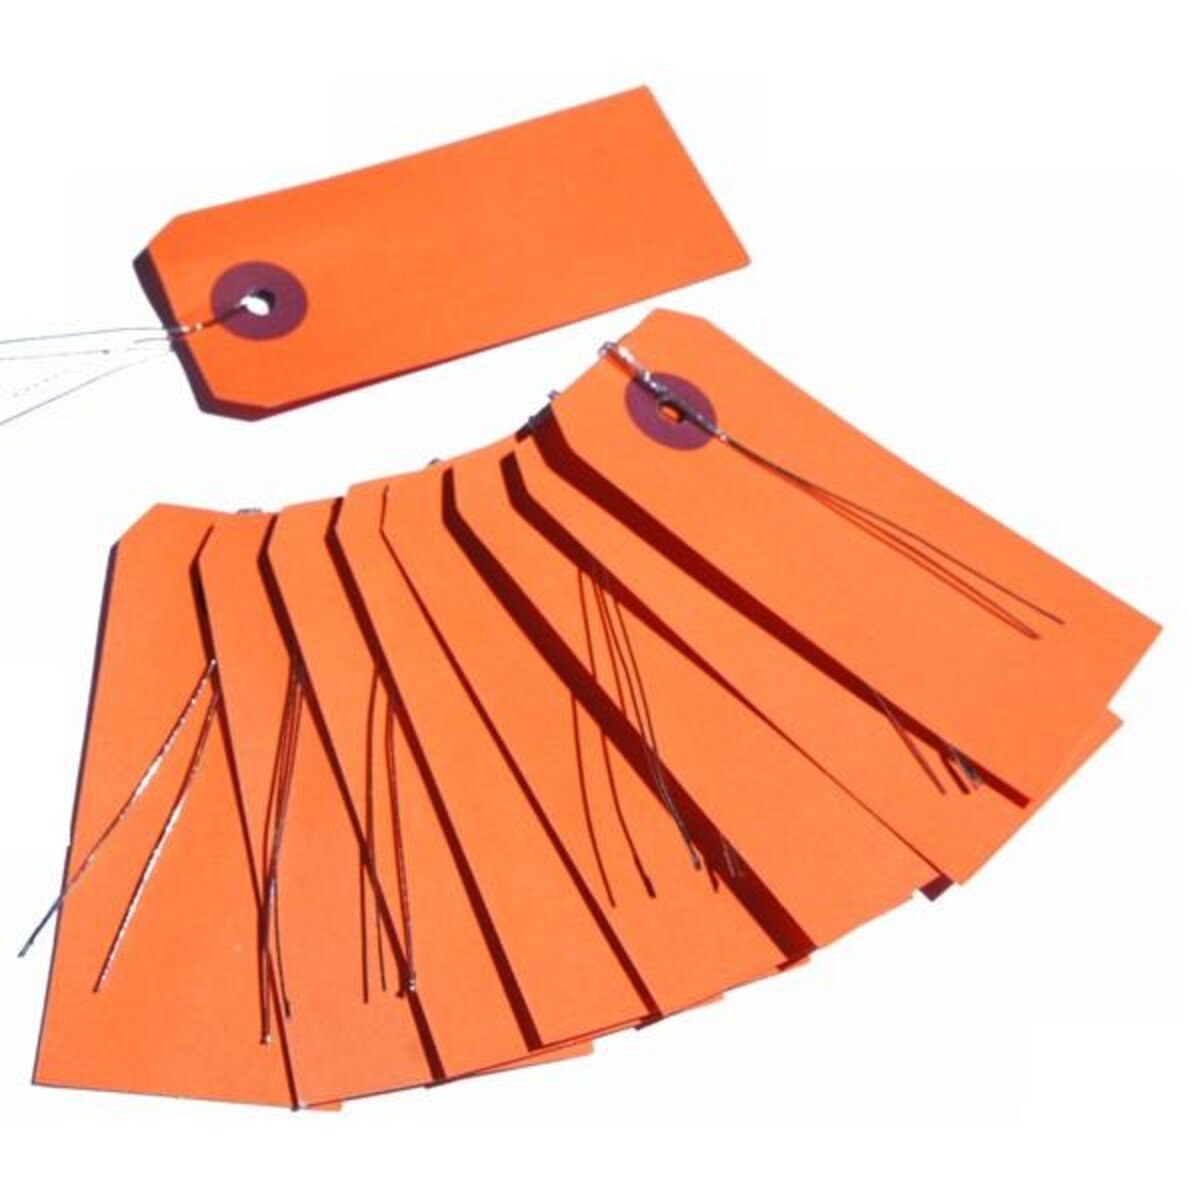 Artemio Etiquettes orange avec fil métallique x 10